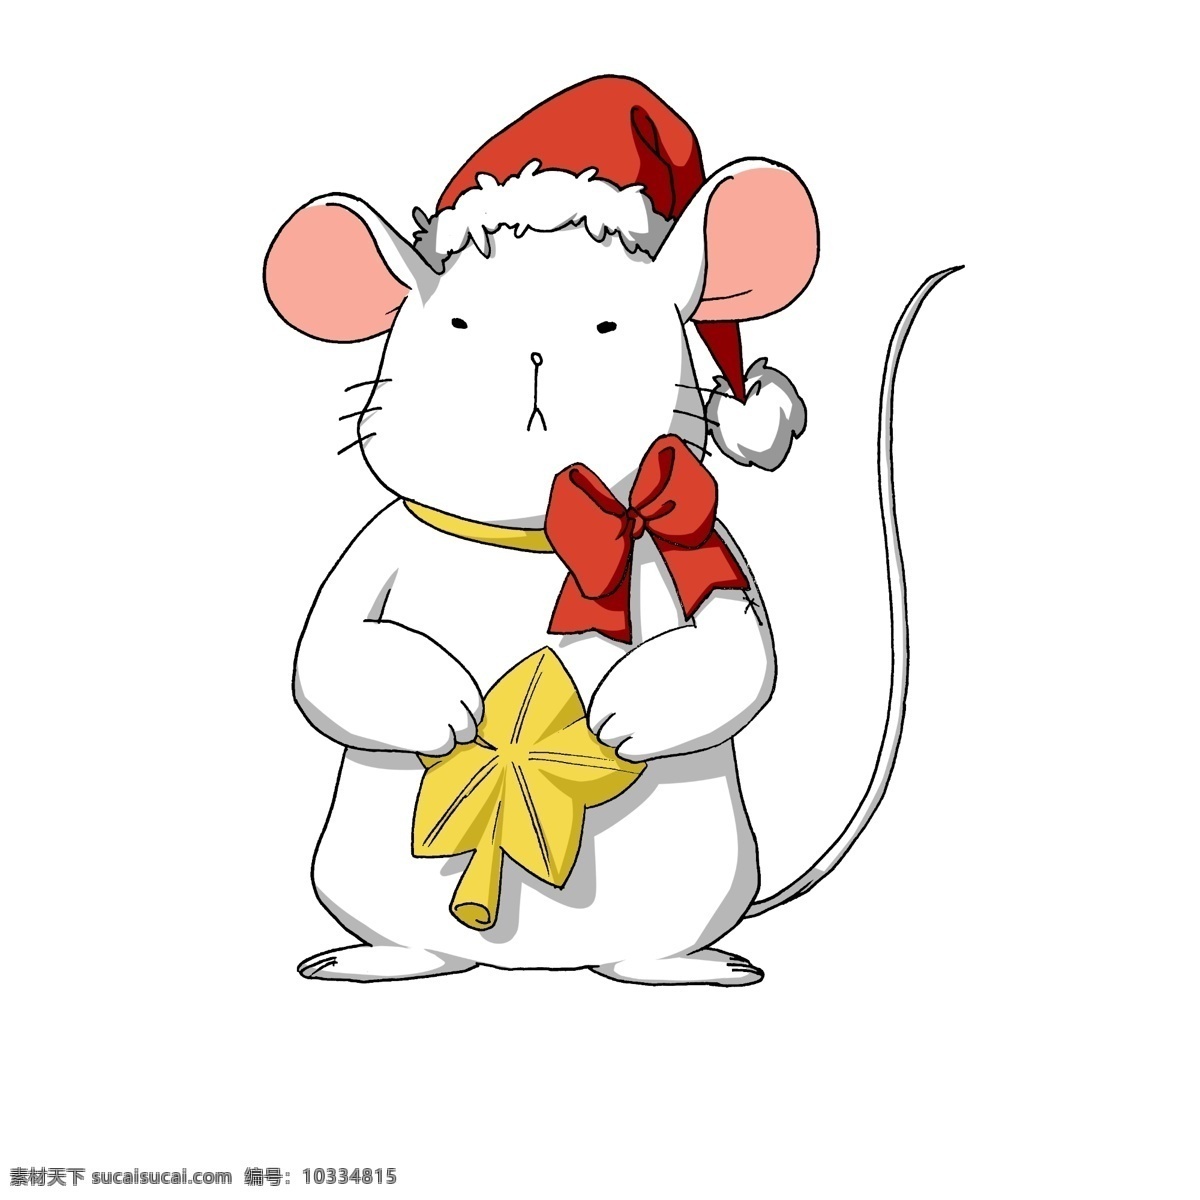 圣诞节 手绘 卡通 动物 老鼠 圣诞 圣诞节动物 卡通动物 圣诞节昆虫 卡通昆虫 圣诞老鼠